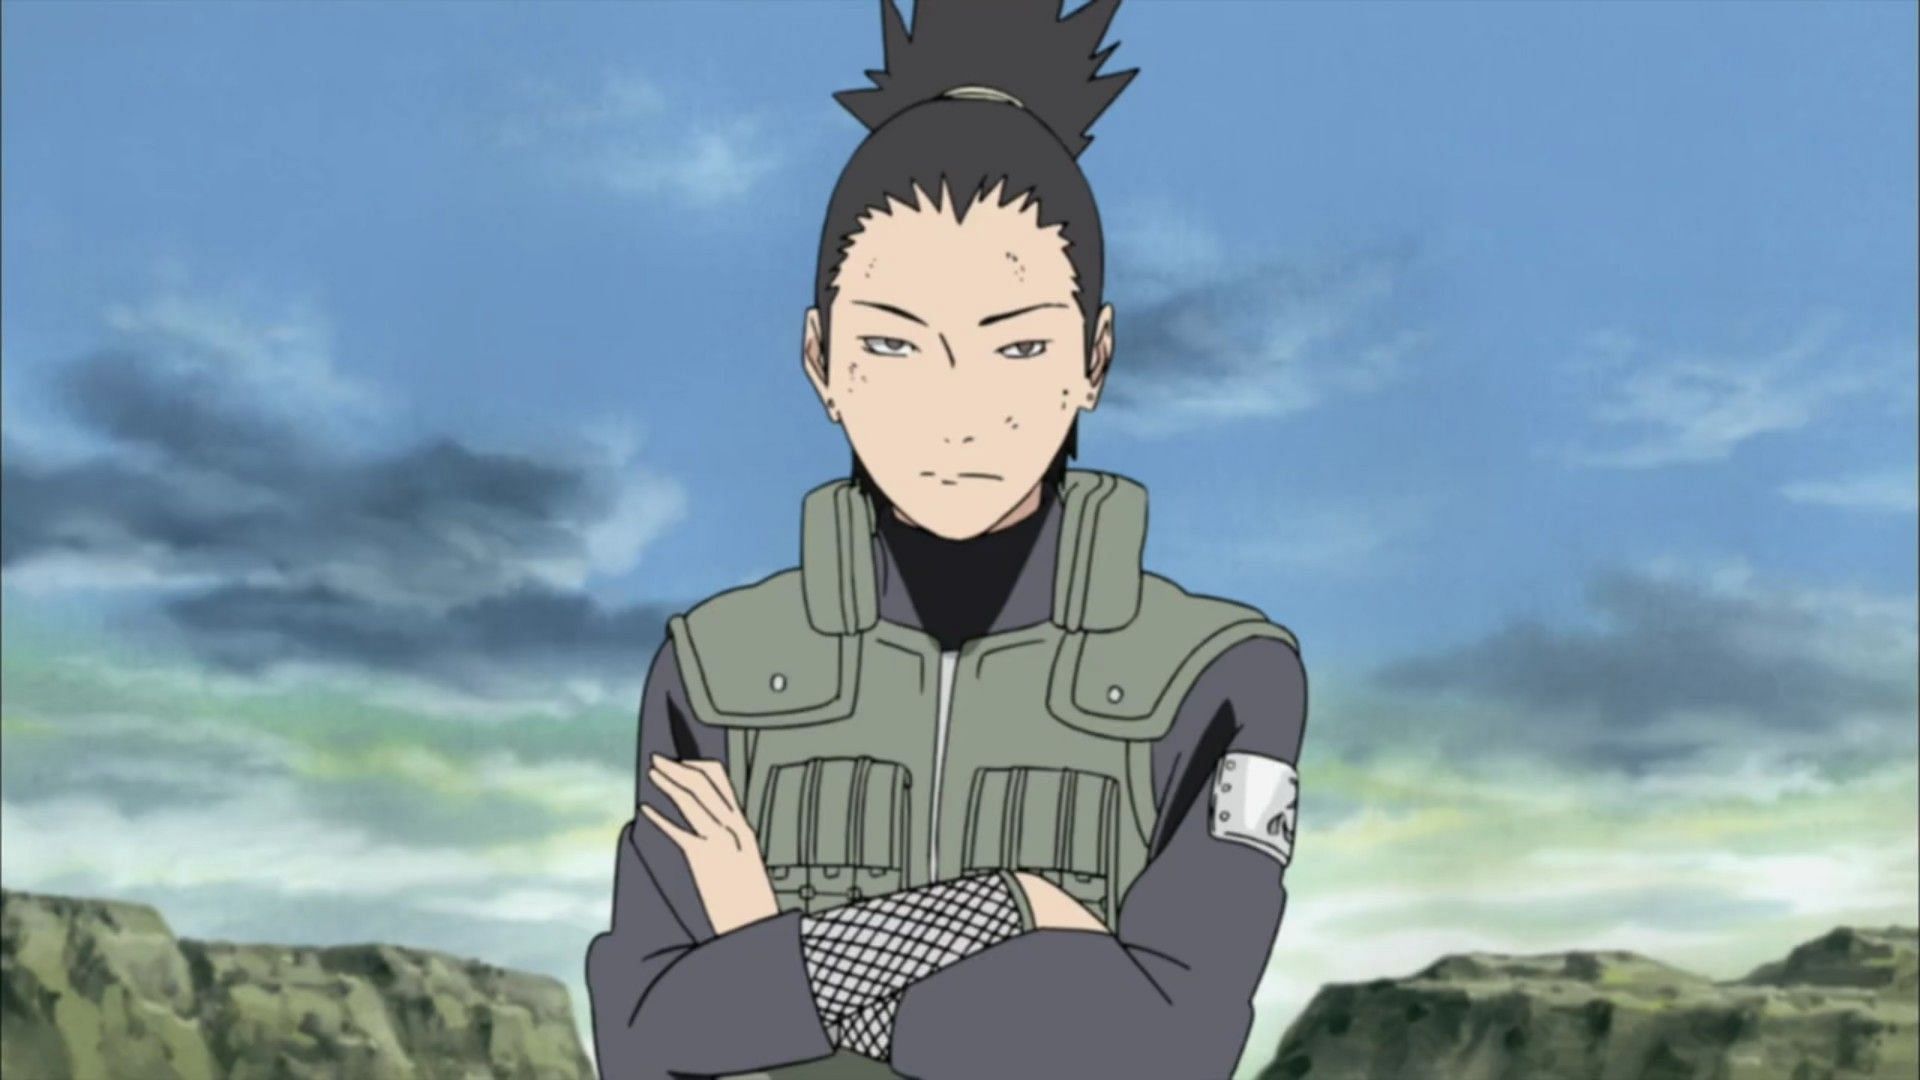 Shikamaru, as seen in Naruto (Image via Studio Pierrot)